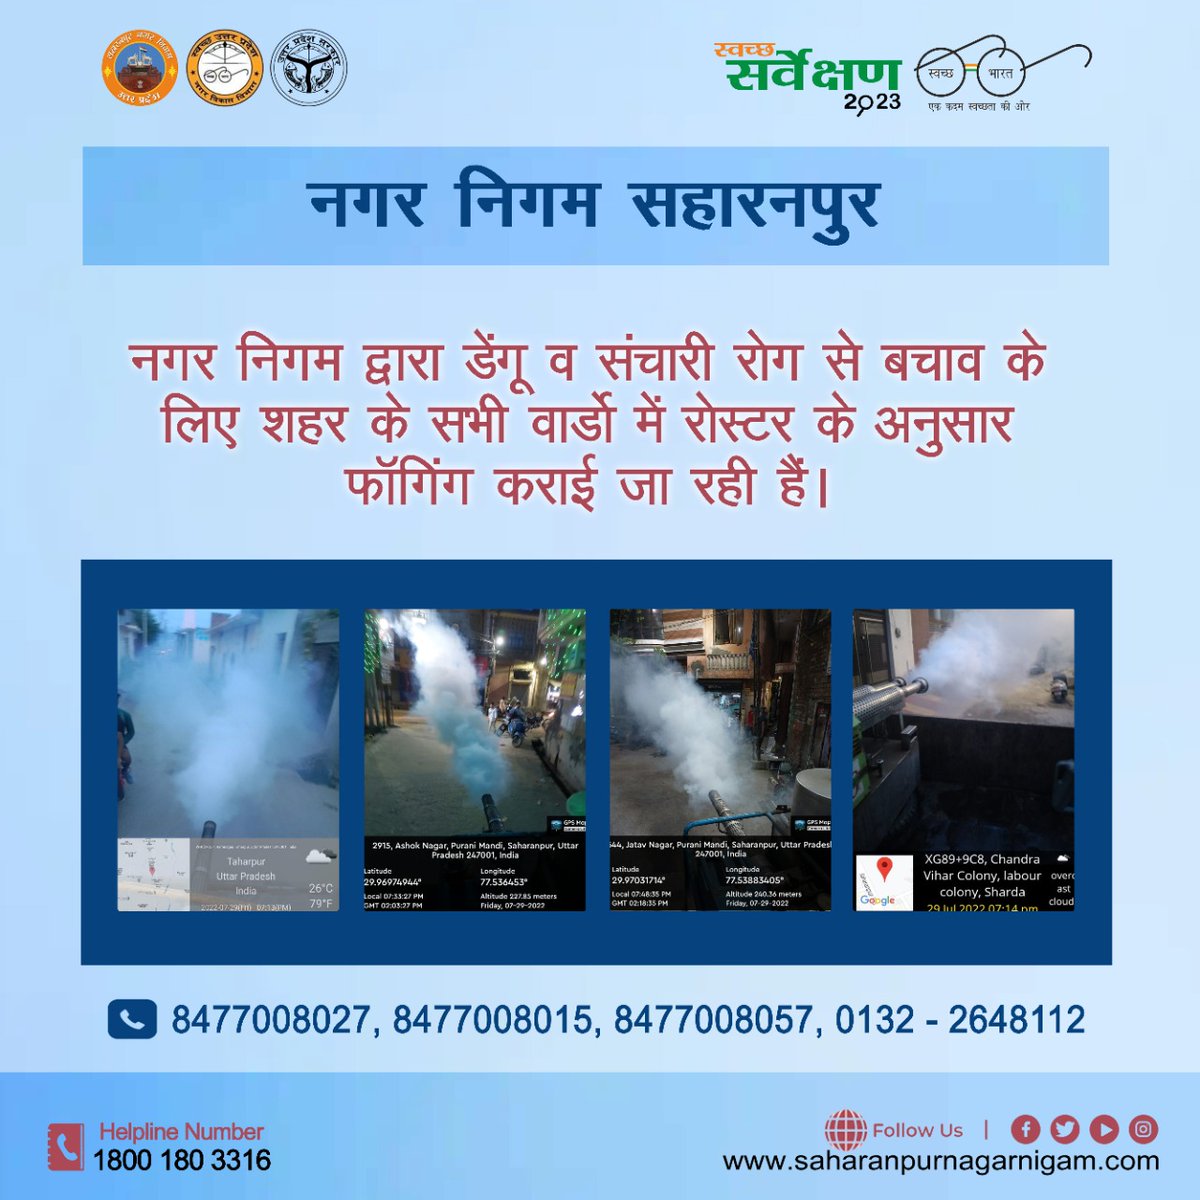 ULB Code :- 800630

#स्वच्छ_सहारनपुर_सुन्दर_सहारनपुर 
#संचारीरोगनियंत्रण_अभियान
नगर निगम द्वारा डेंगू व संचारी रोग से बचाव के 
लिए शहर के सभी वार्डो में रोस्टर के अनुसार 
फॉगिंग कराई जा रही हैं।
#swachhsurvekshan2023saharanpur